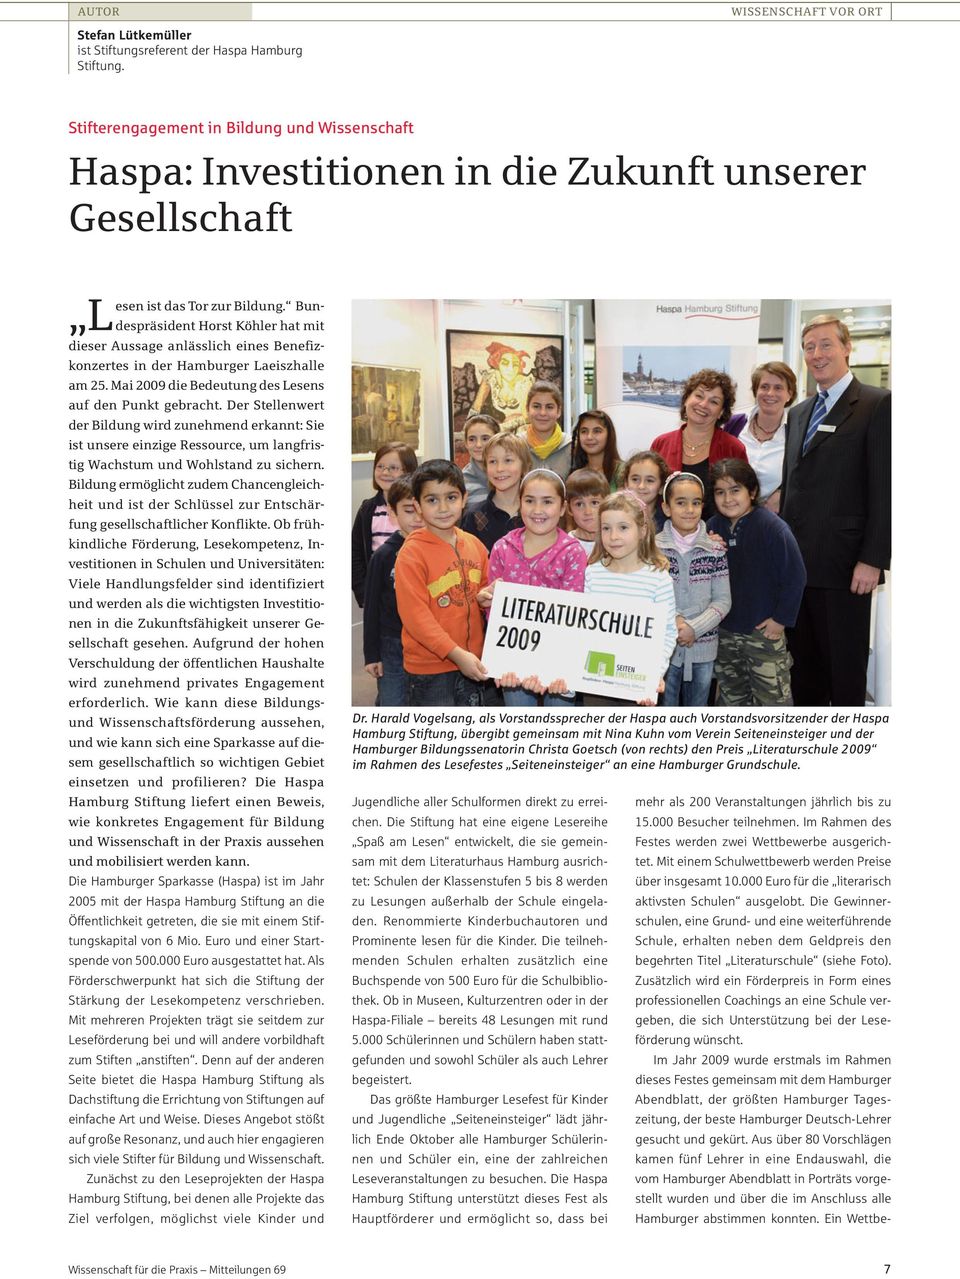 Bundespräsident Horst Köhler hat mit L dieser Aussage anlässlich eines Benefizkonzertes in der Hamburger Laeiszhalle am 25. Mai 2009 die Bedeutung des Lesens auf den Punkt gebracht.